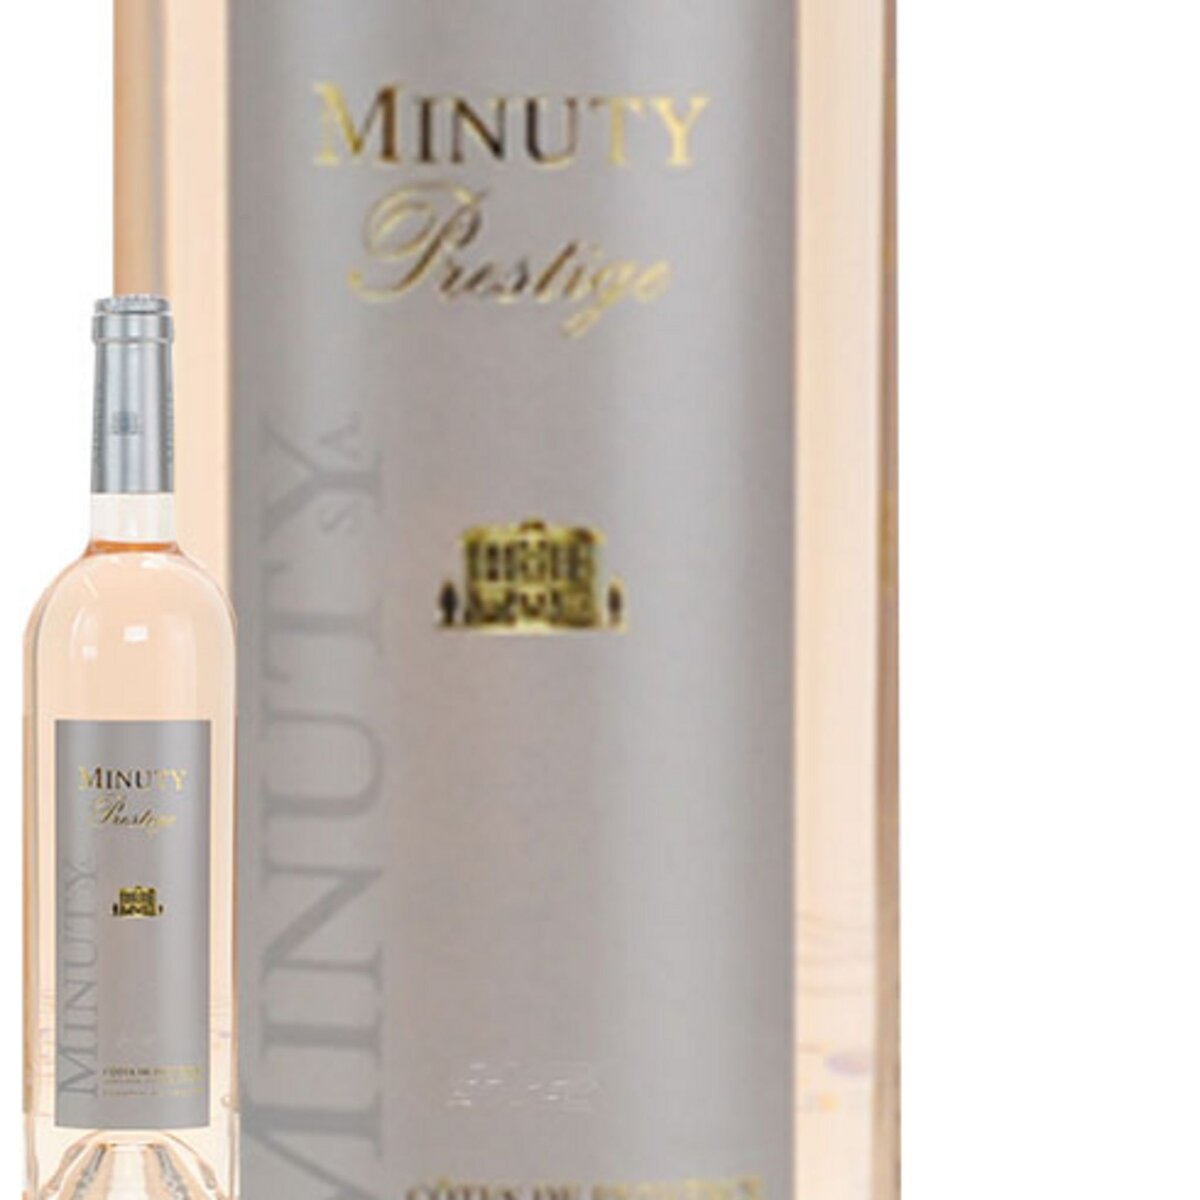 Minuty Prestige Côtes de Provence Rosé 2015